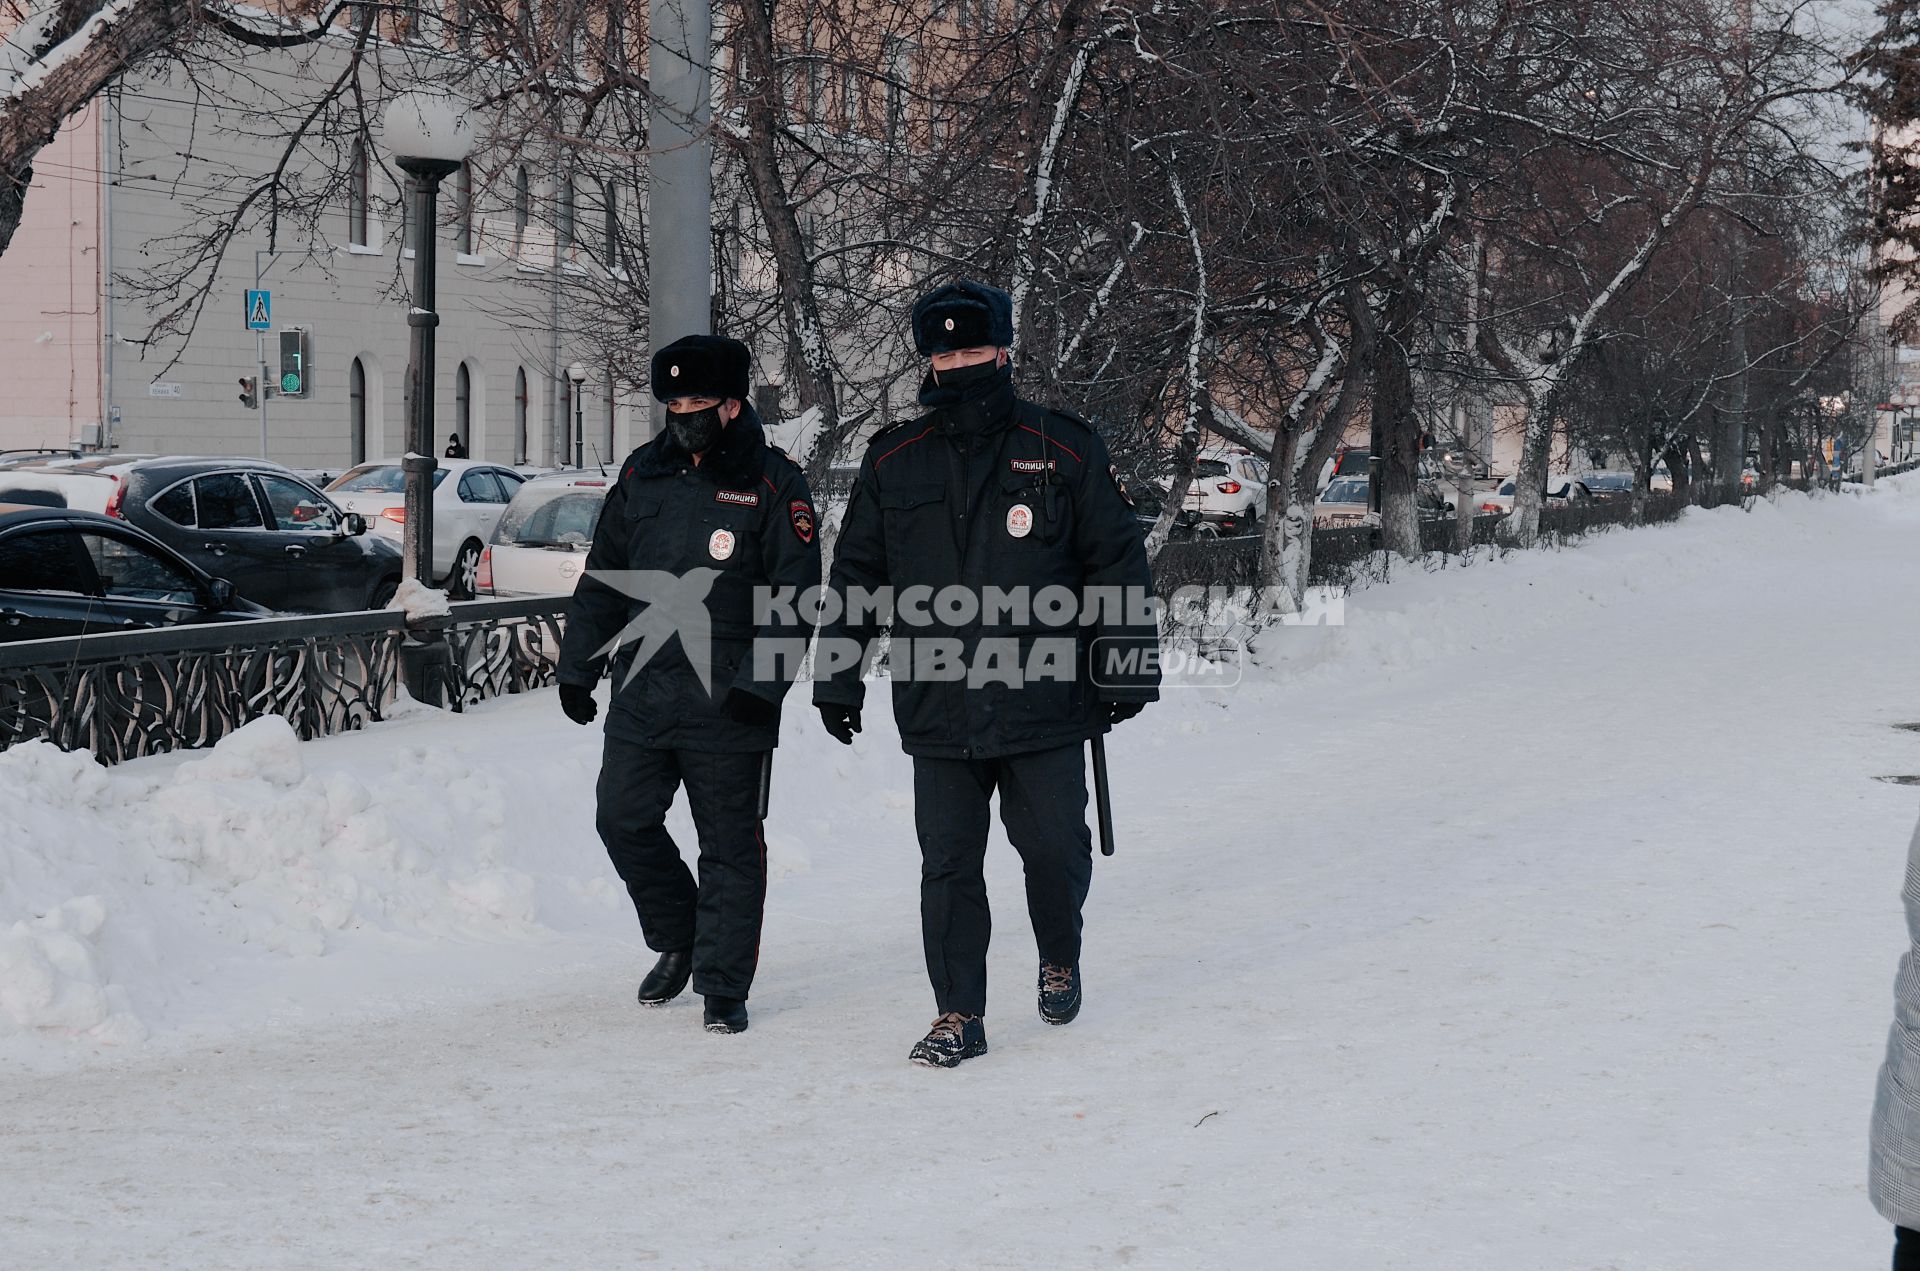 Томск. Сотрудники полиции на одной из улиц города.